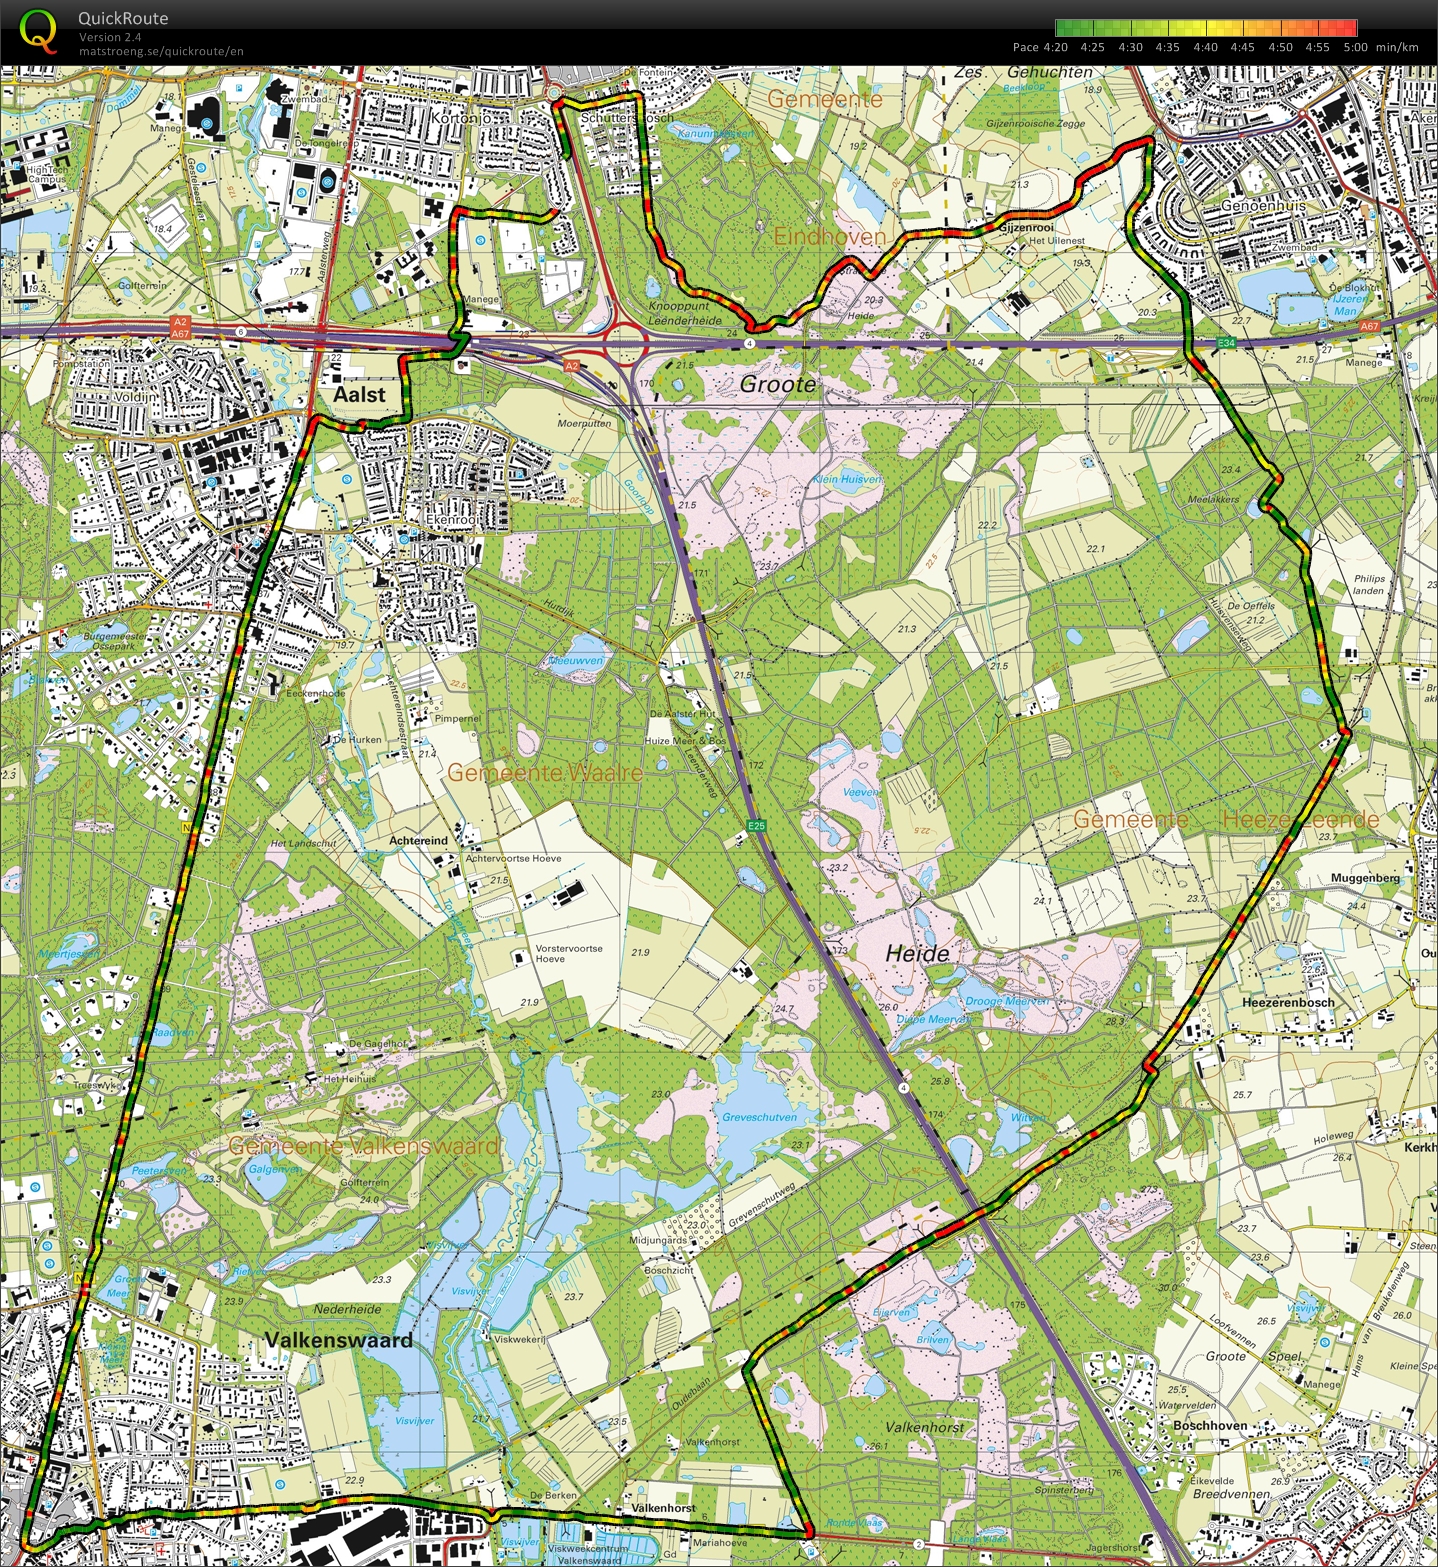 Eindhoven-Valkenswaard-Heeze-Geldrop 26k (2014-08-31)